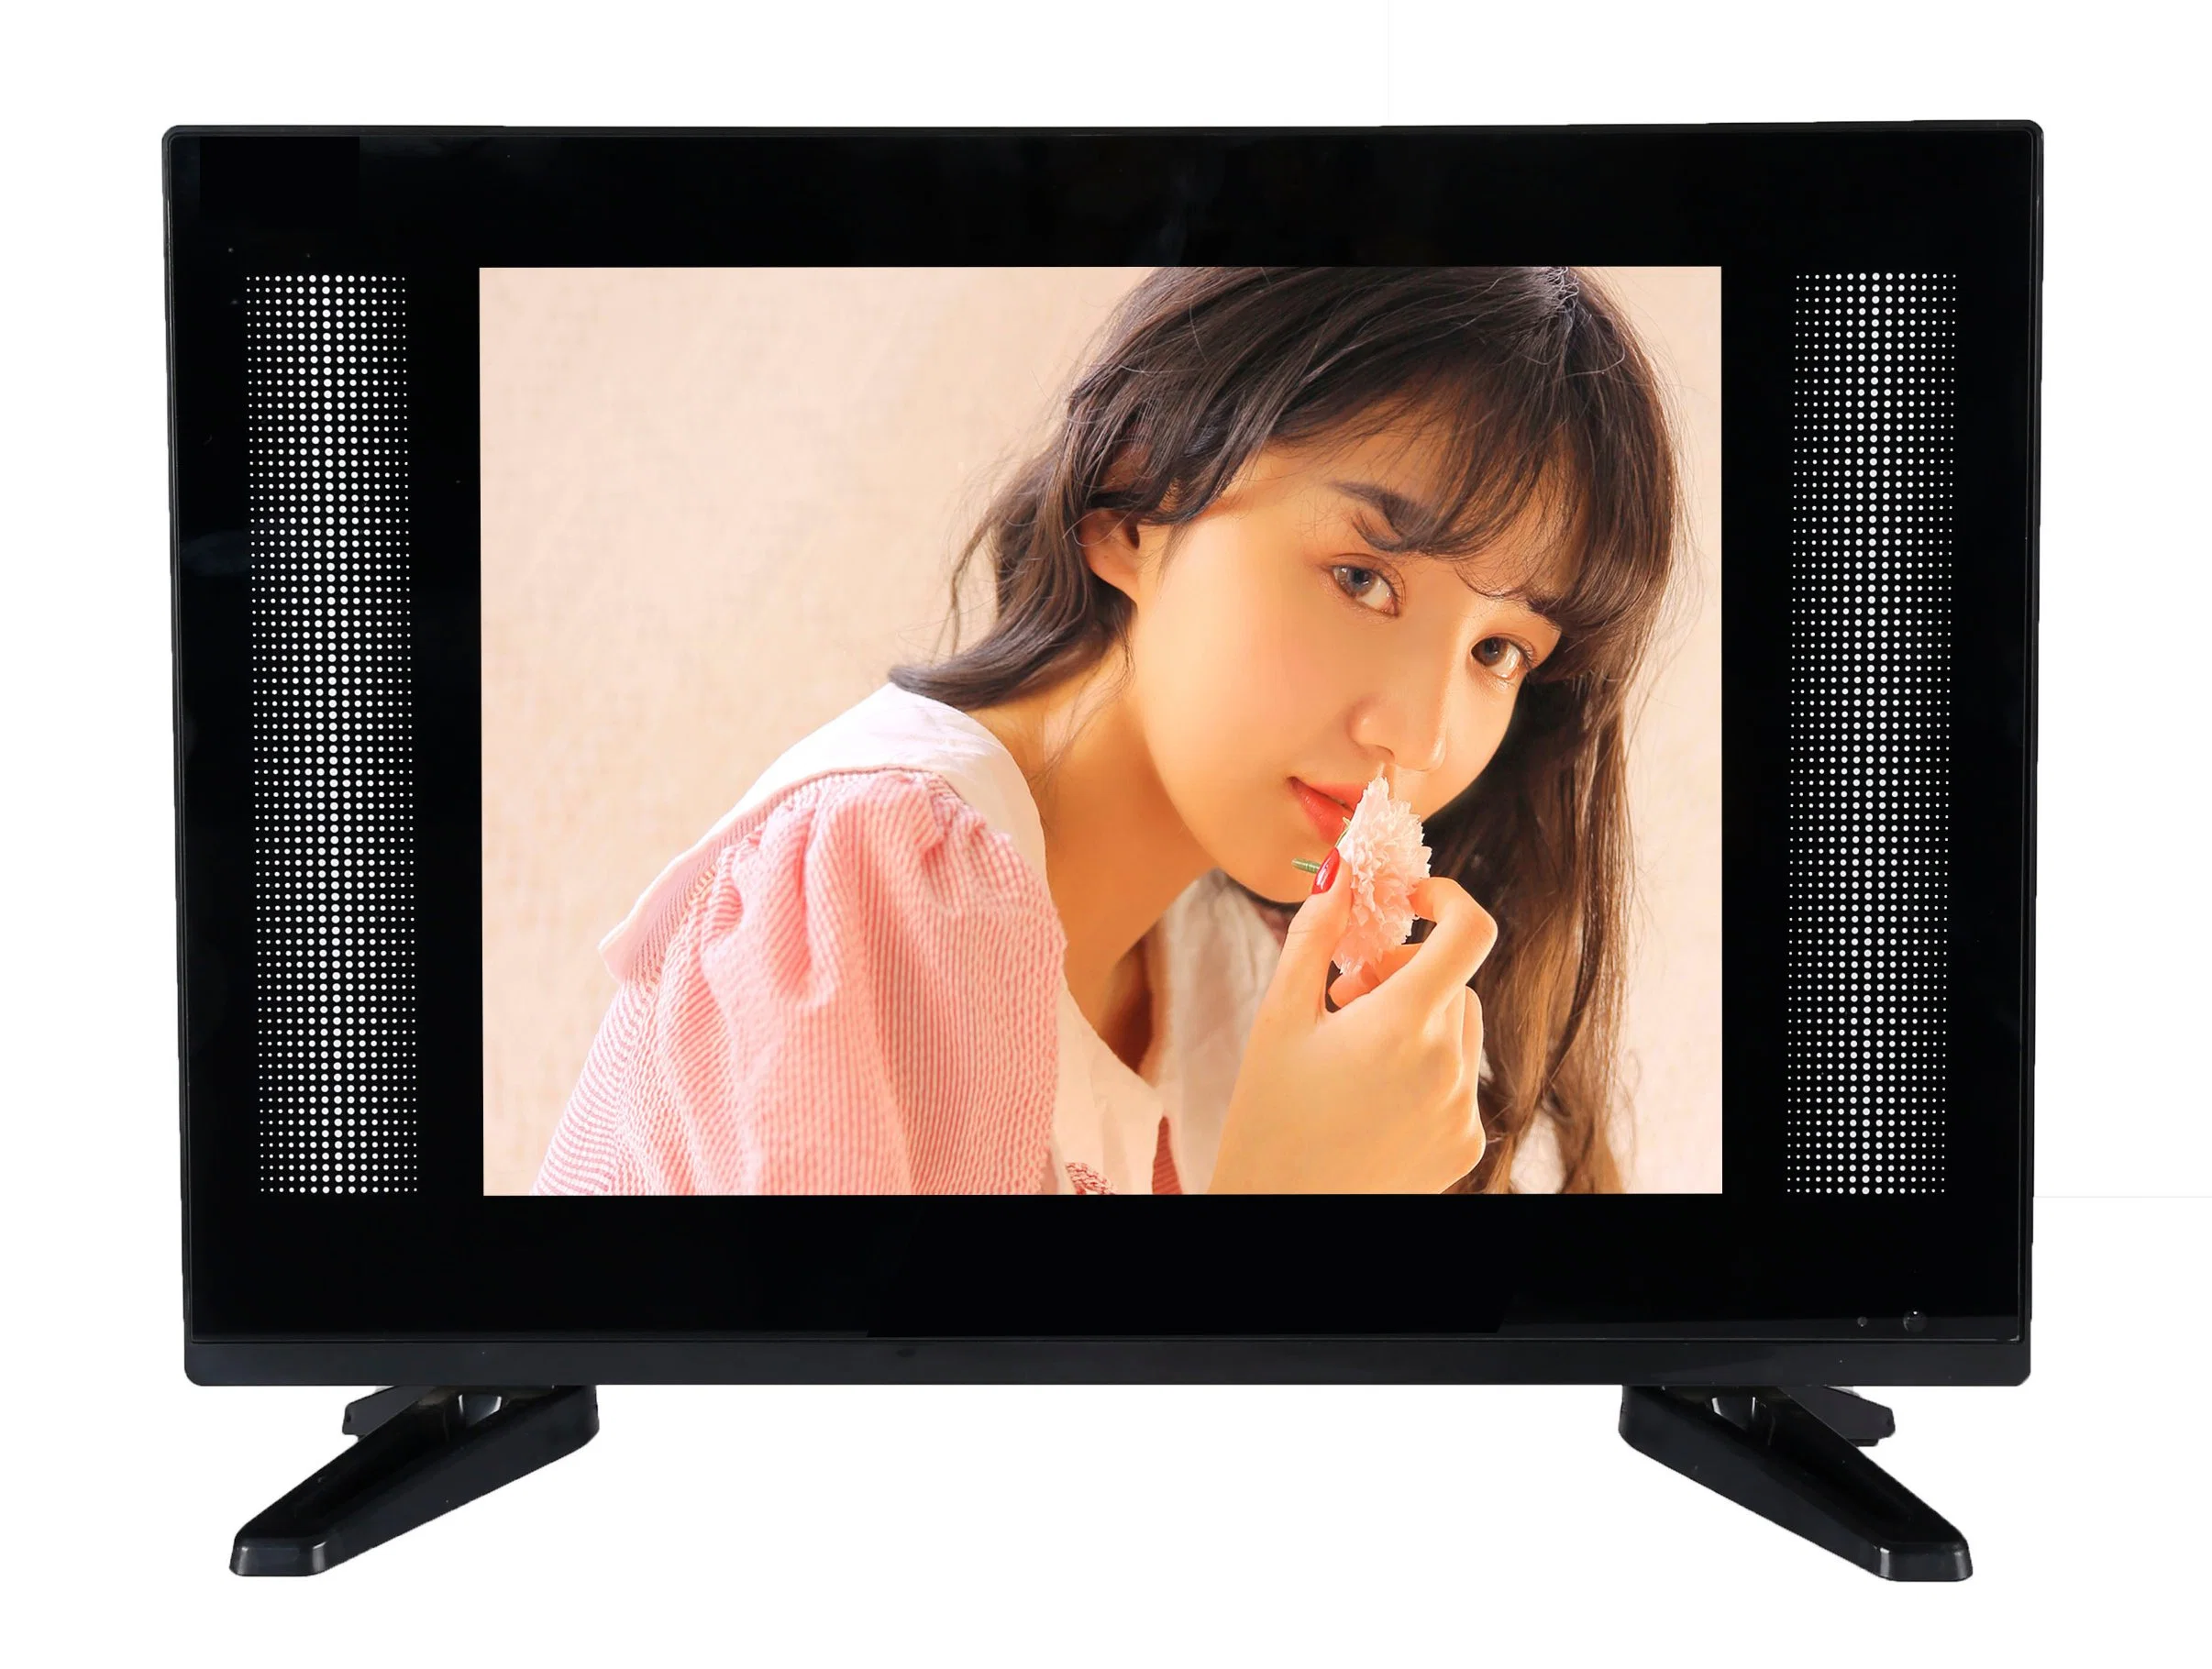 Acheter à bas prix d'usine de la Chine au meilleur prix TV LCD 15 pouces en Arabie saoudite